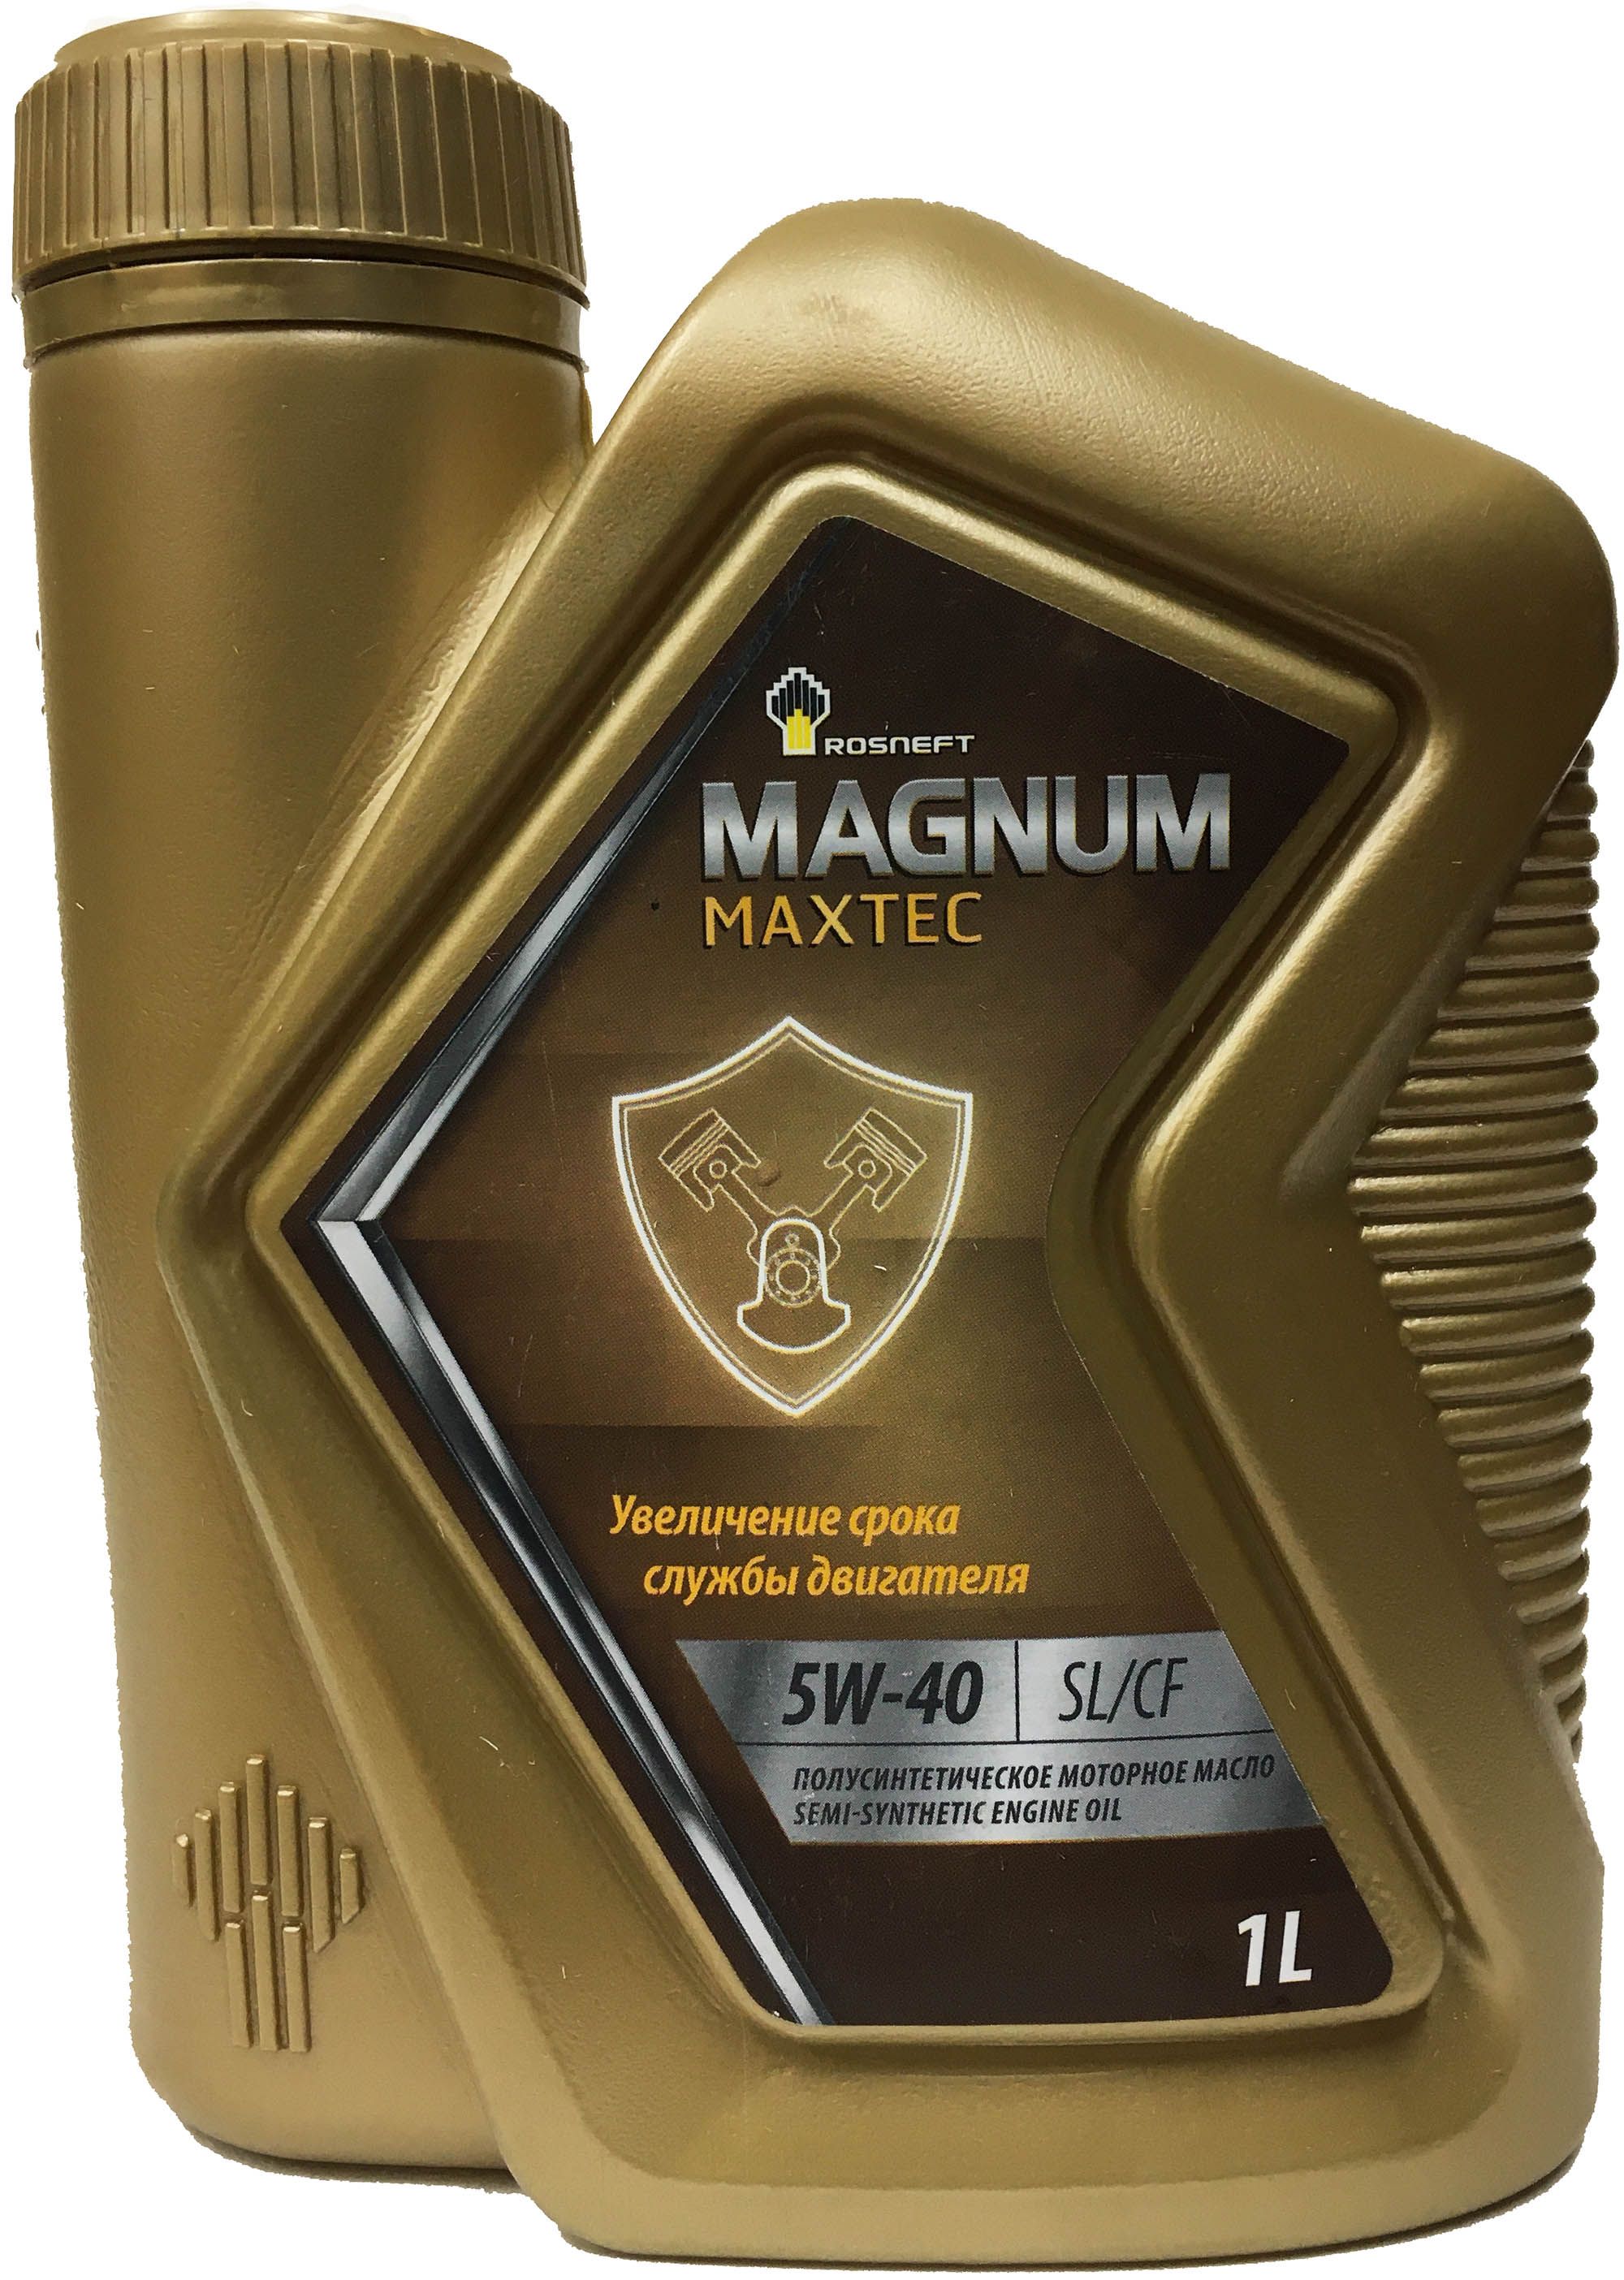 Magnum Maxtec 5w-30. Rosneft Magnum Maxtec 10w-40. Роснефть Magnum Maxtec 5w-40. Rosneft Magnum Maxtec 5w30 SL/CF. 205л. Масла роснефть каталог